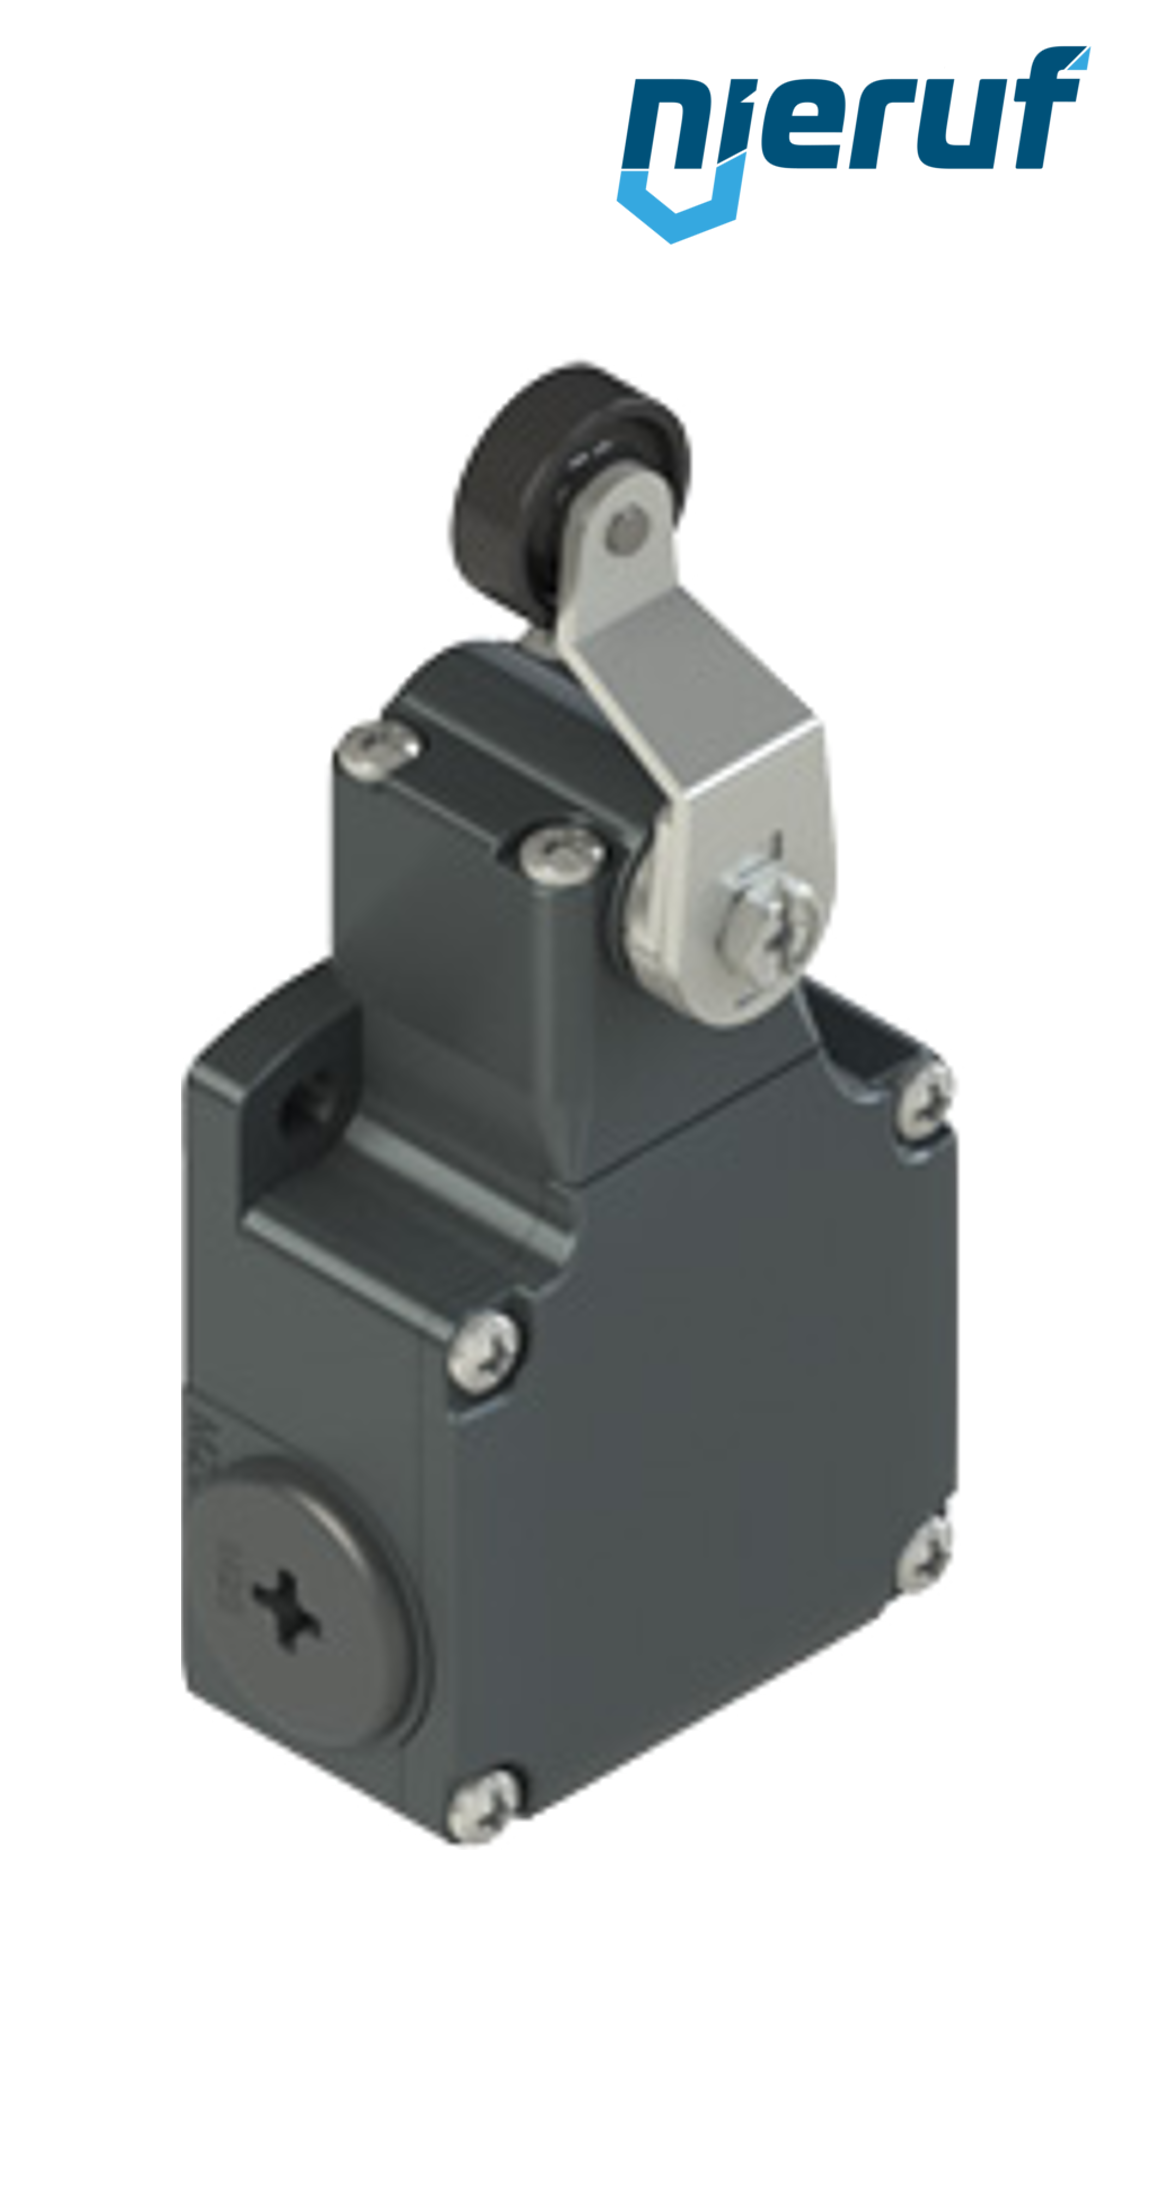 interrupteur de position FL551 PR04 pour vannes à guillotine pneumatiques modèle SR diamètre nominal DN50 à DN150